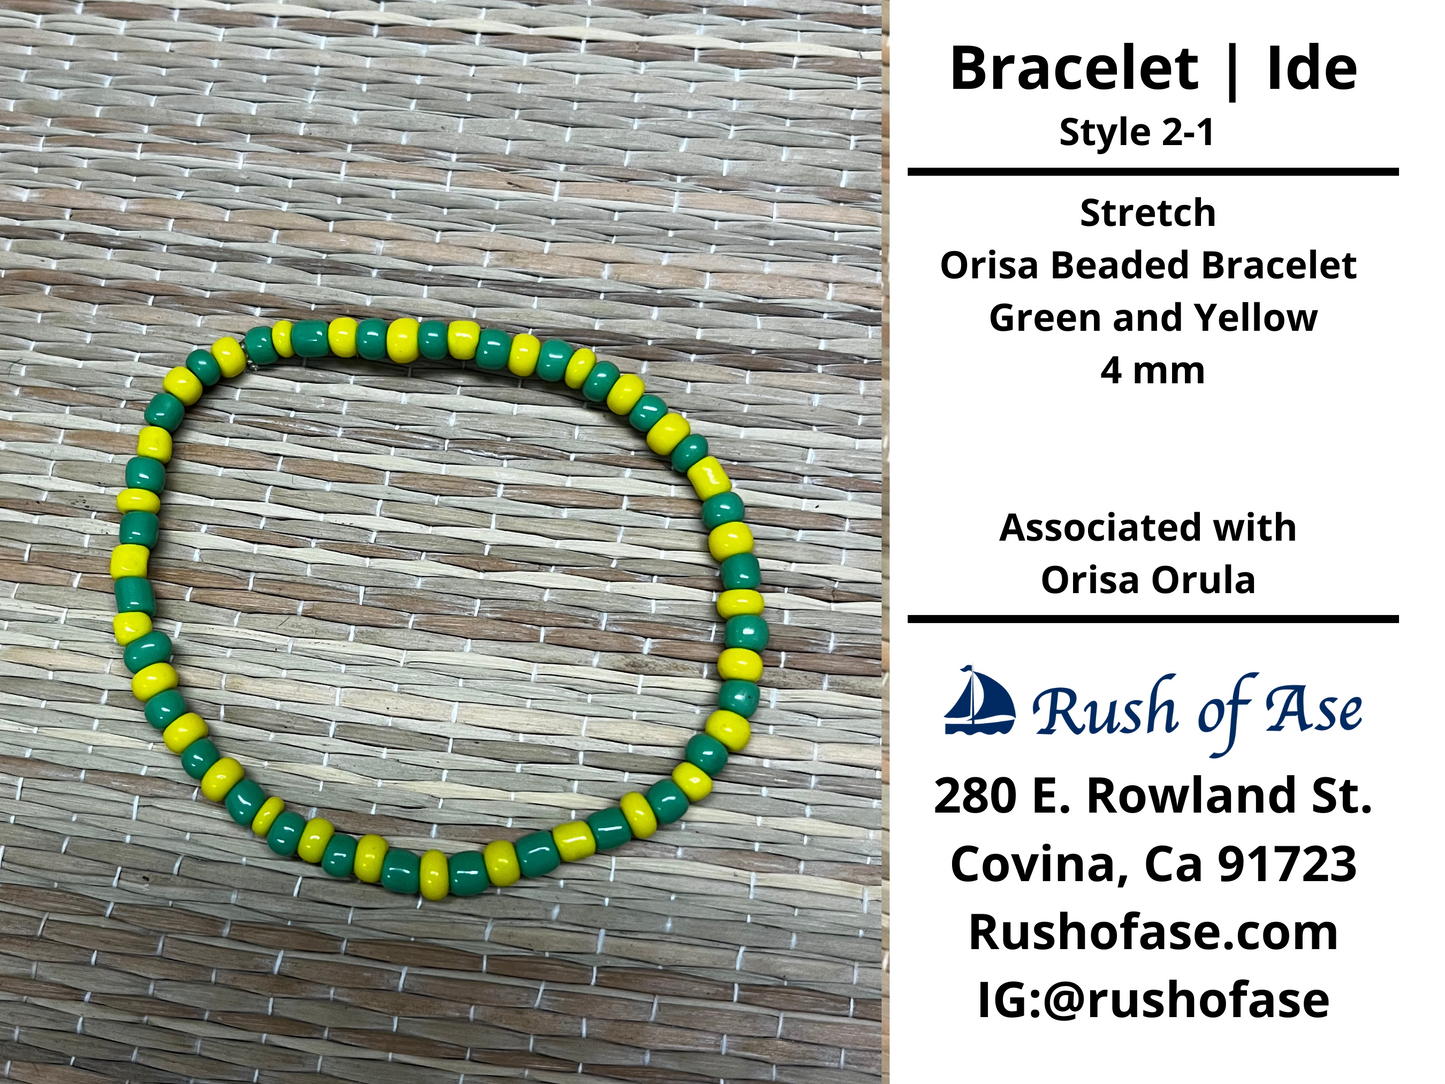 Bracelets | Ide | Stretch Orisa Beaded Bracelet – Green and Yellow – 4mm | Orula Bracelet - Style 2-1